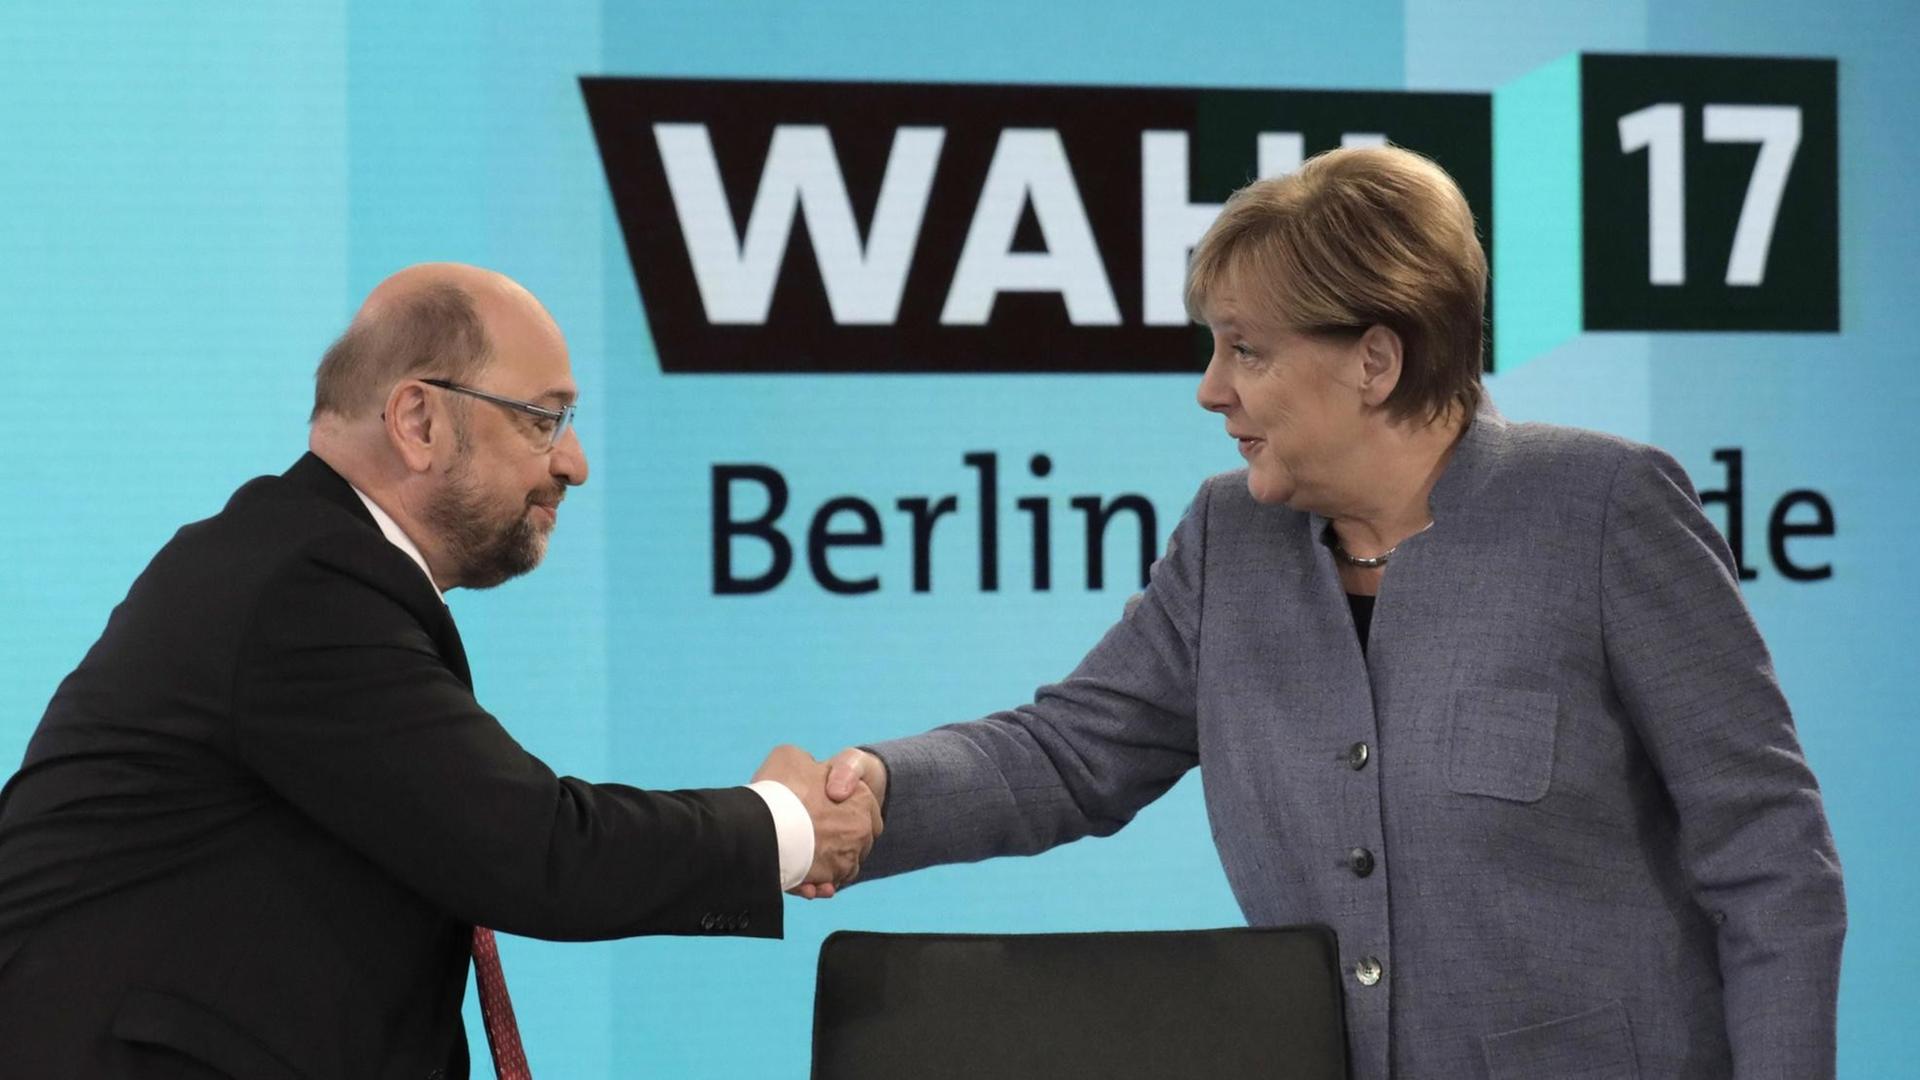 Bundeskanzlerin Angela Merkel (CDU) gibt dem SPD-Vorsitzenden Martin Schulz am 24.09.2017 in Berlin vor einer Fernsehrunde der Parteivorsitzenden nach der Bundestagswahl die Hand.